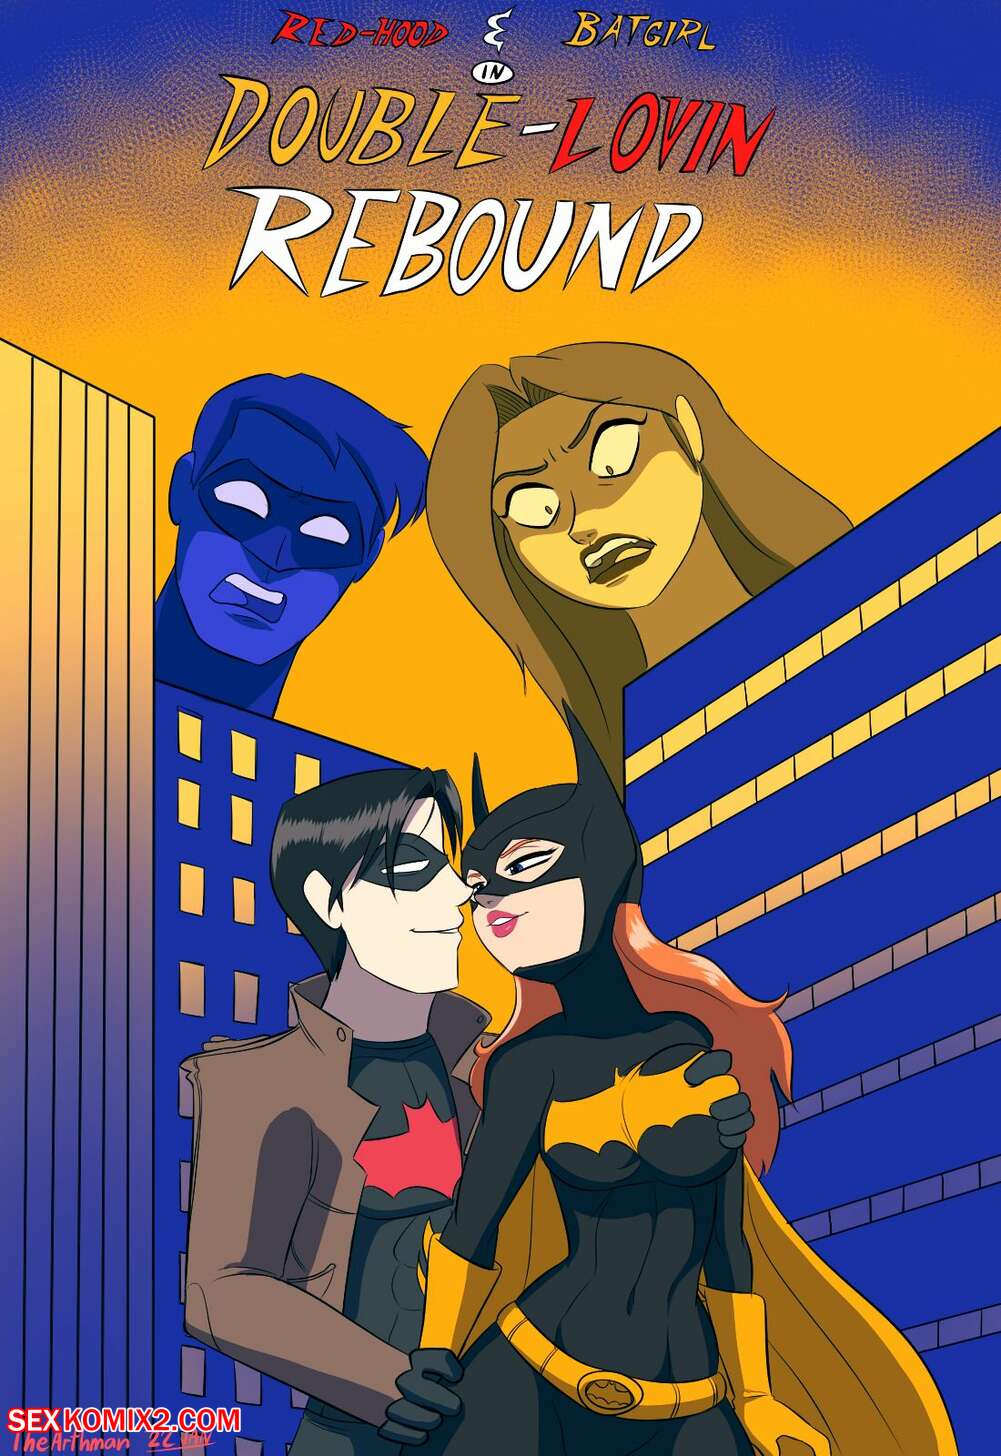 1001px x 1456px - âœ…ï¸ Porn comic Double Loving Rebound. The Arthman. Sex comic redhead beauty  Batgirl | Porn comics in English for adults only | sexkomix2.com